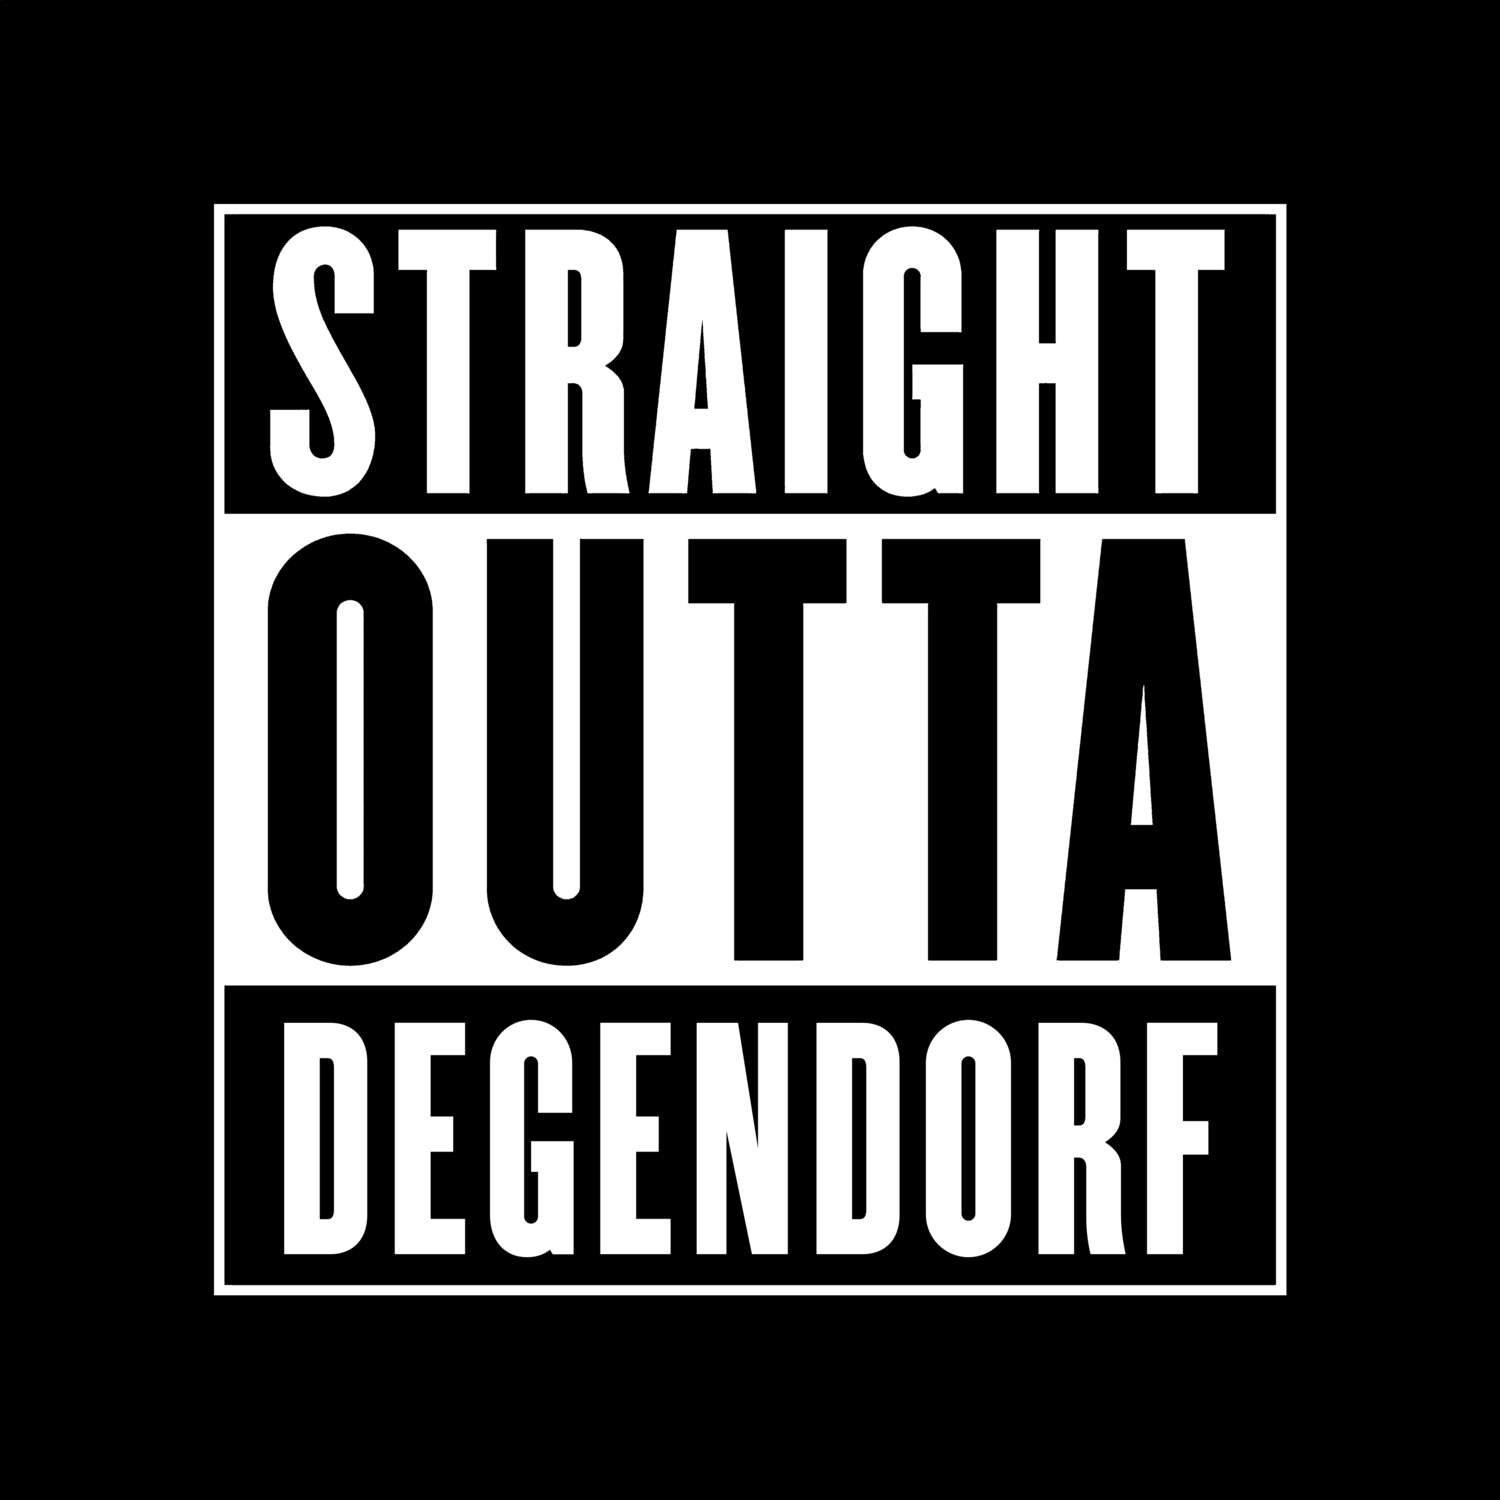 Degendorf T-Shirt »Straight Outta«